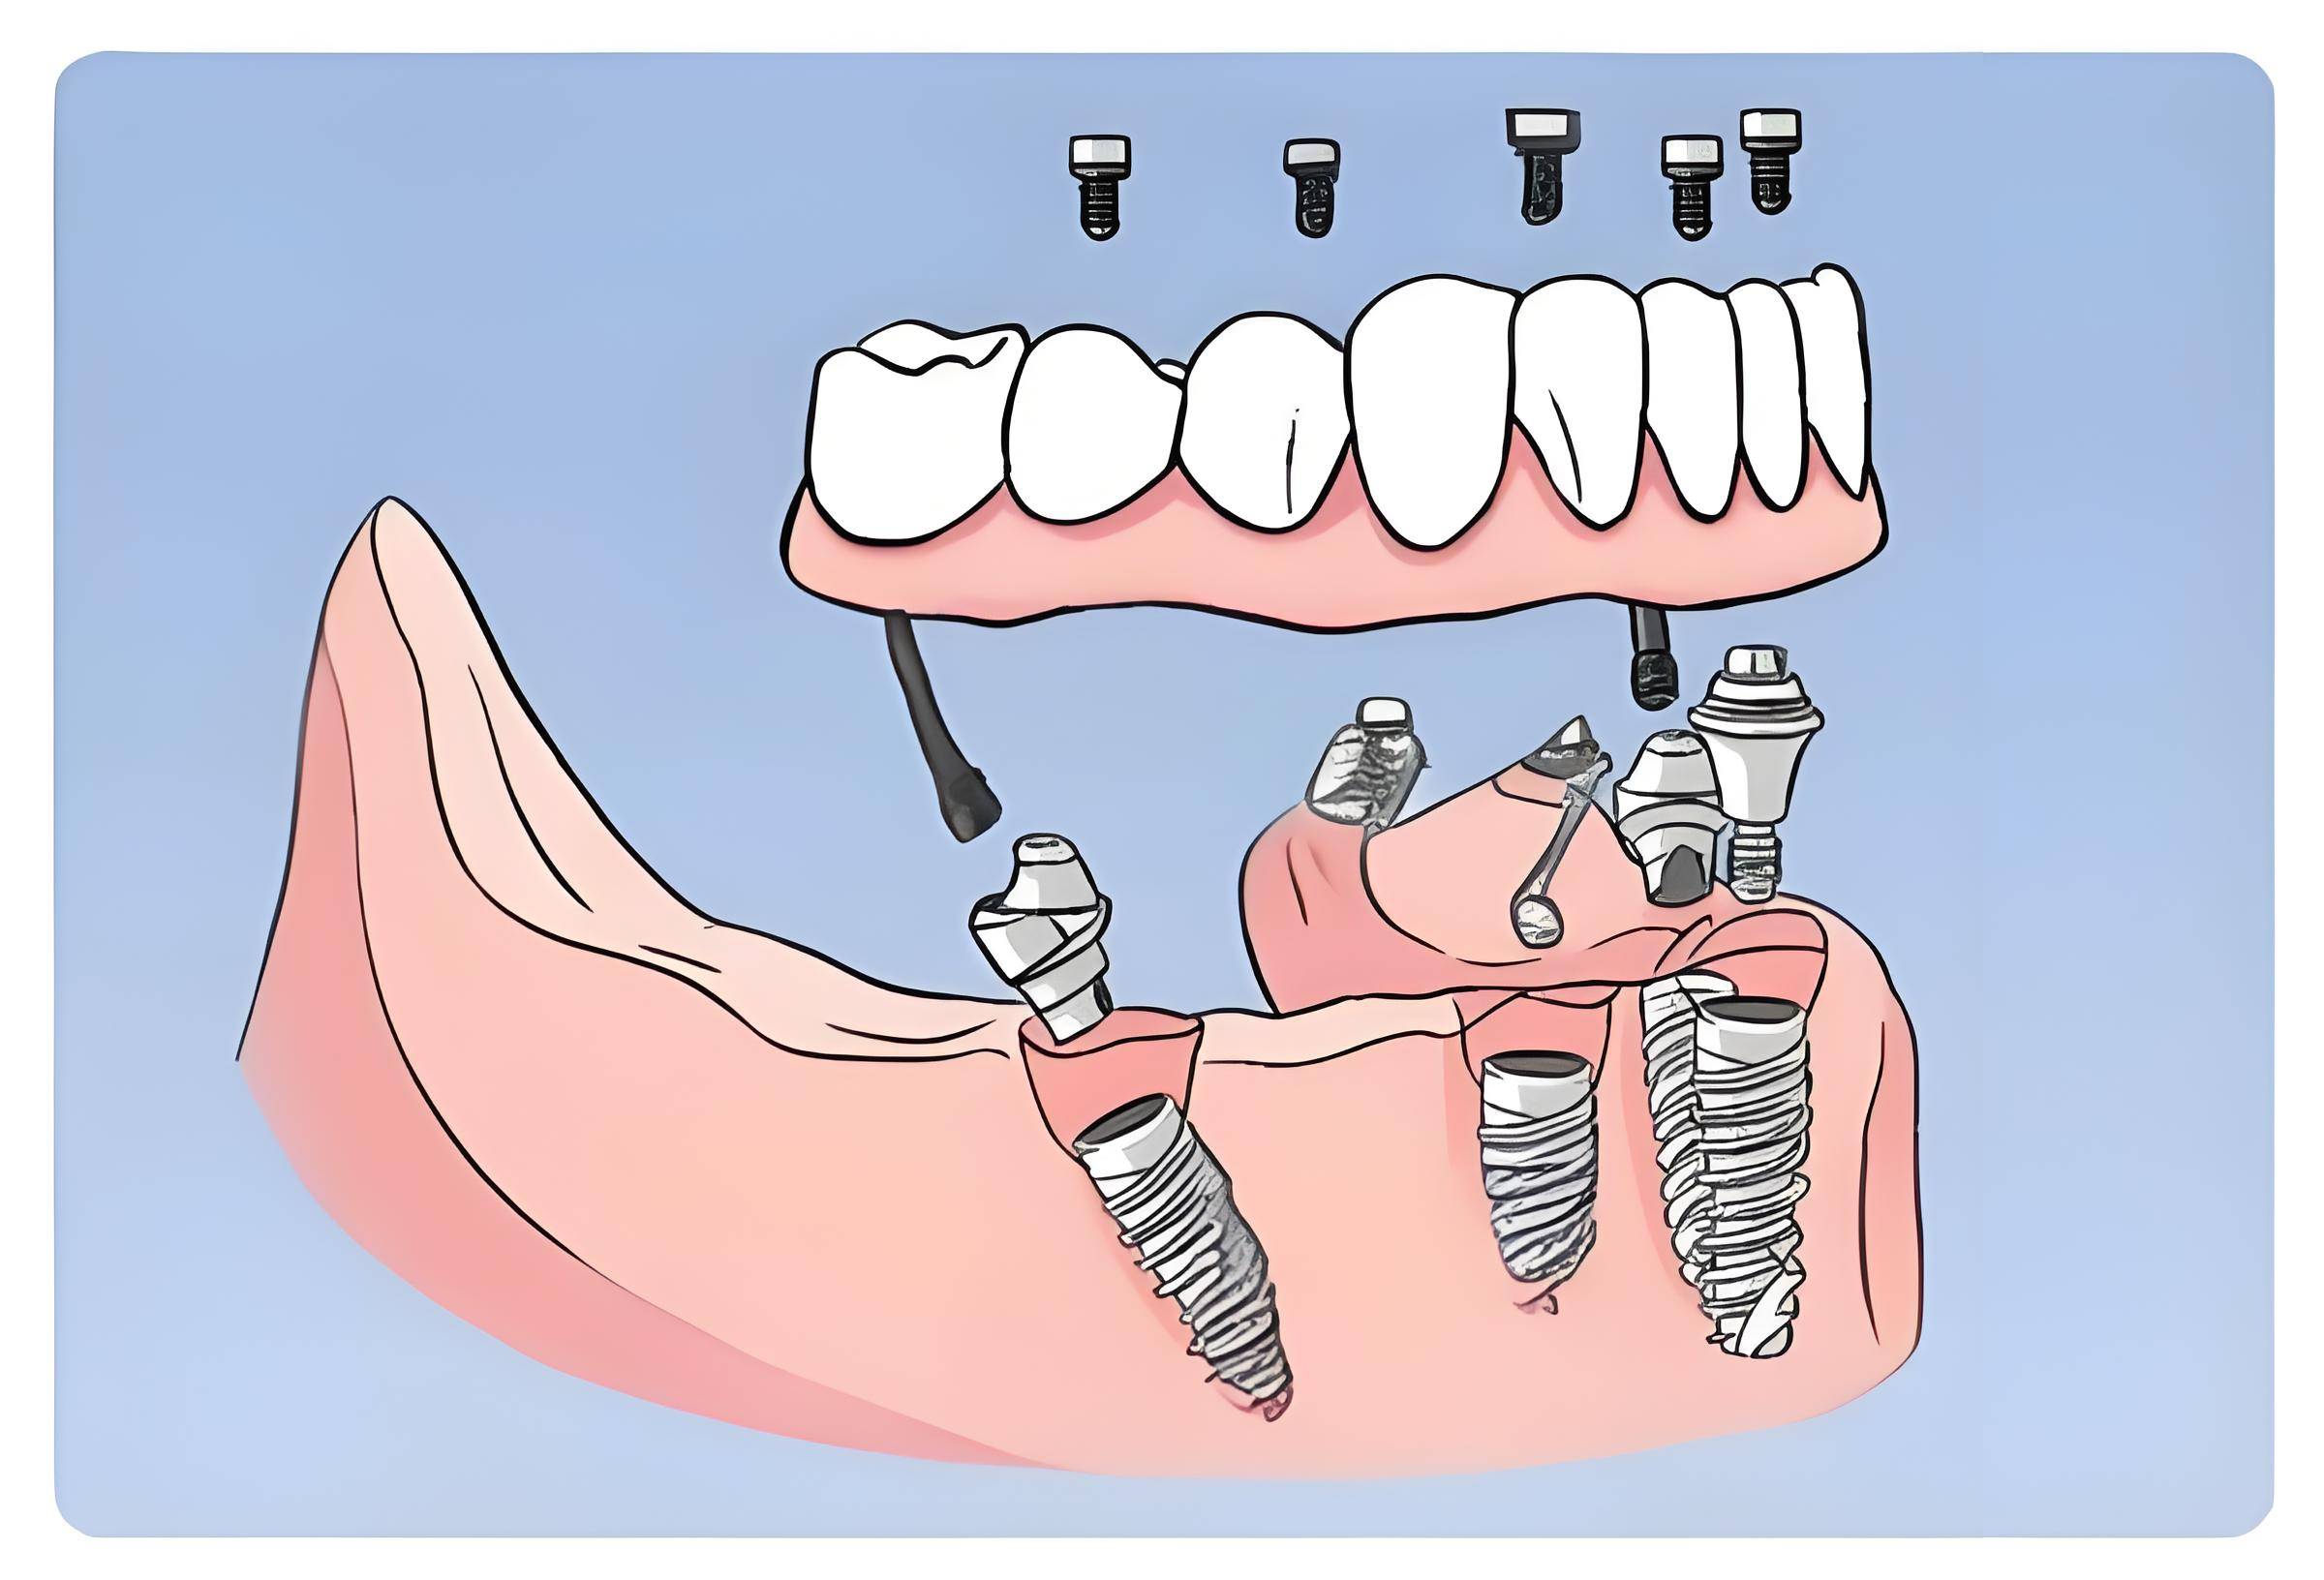 高血糖患者,需要在种植牙前进行综合评估,确保能够耐受手术过程